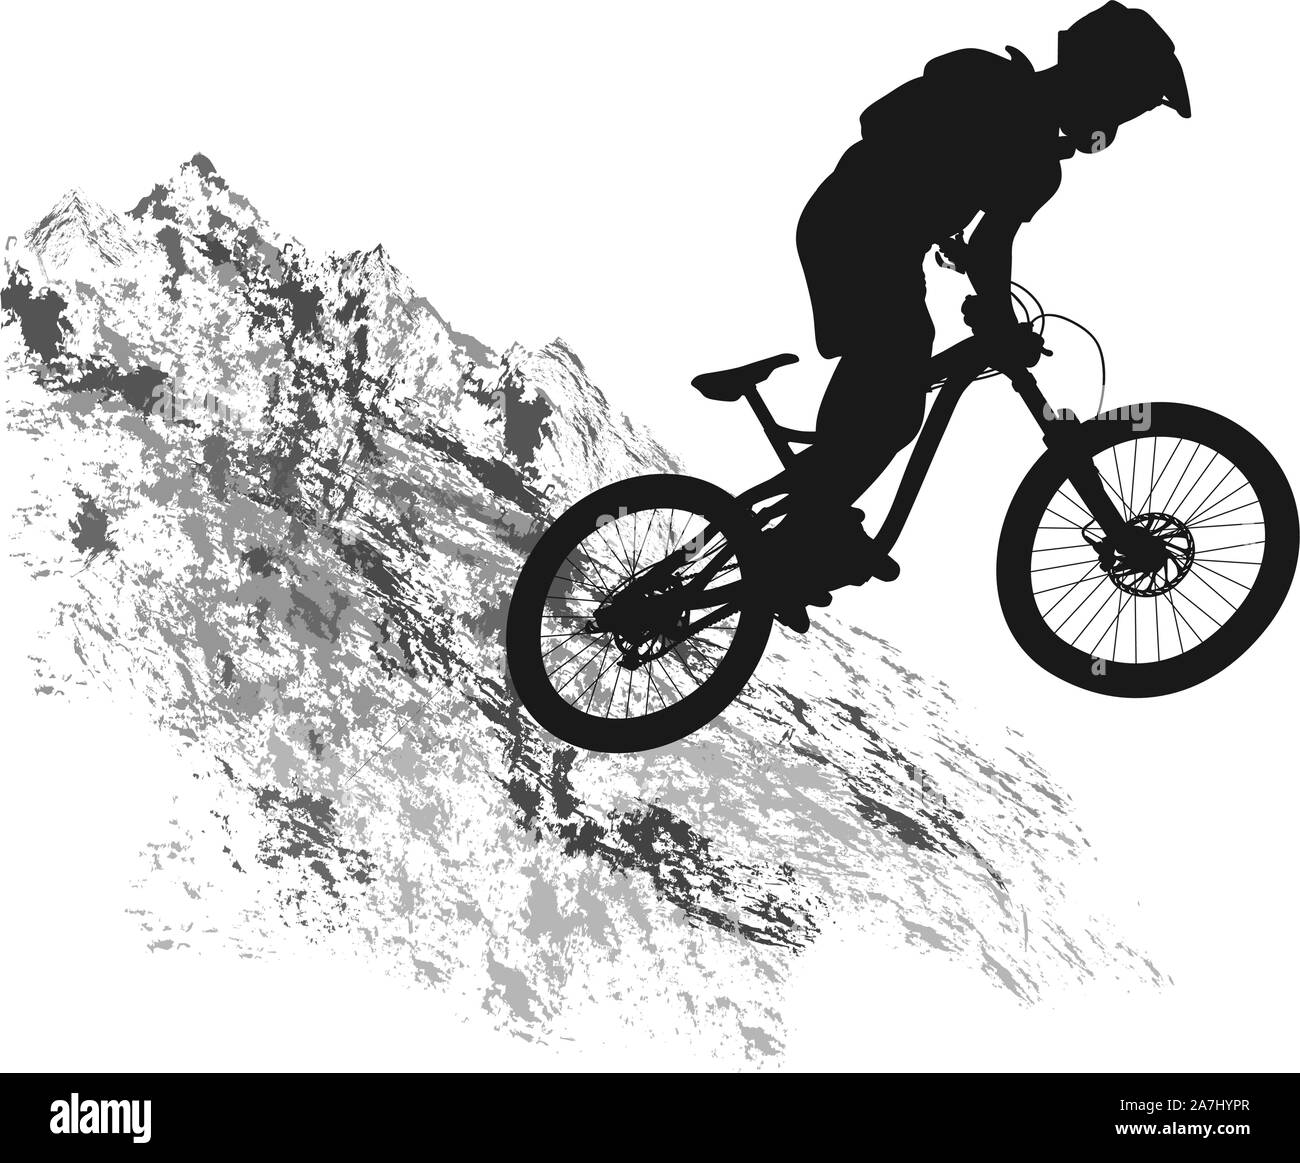 Ciclista de salto Imágenes de stock en blanco y negro - Alamy